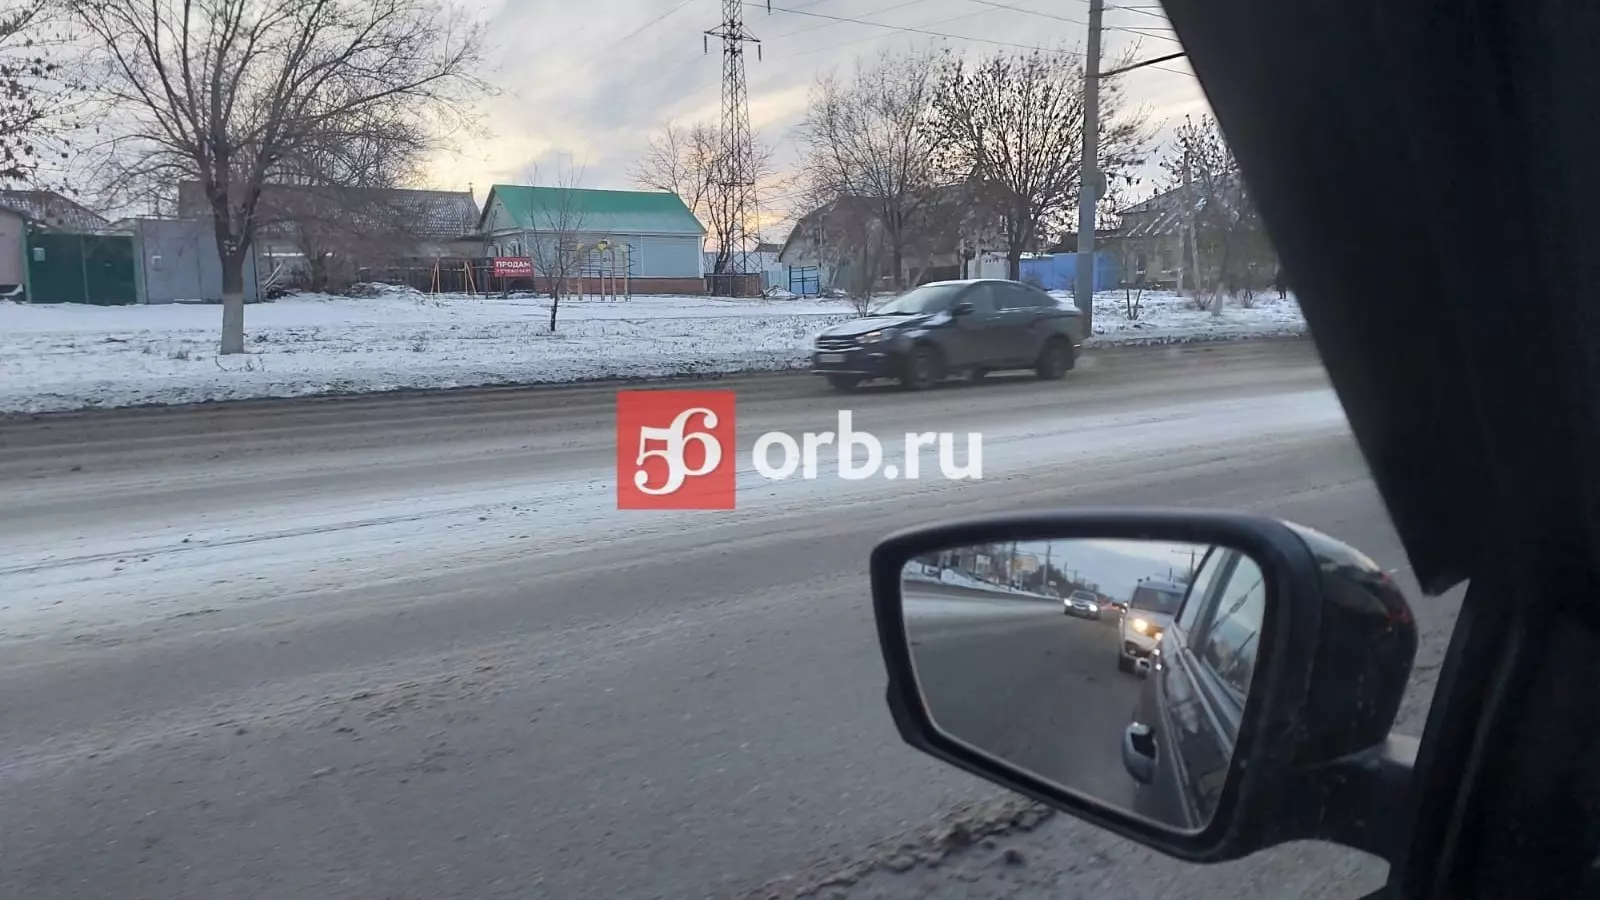 Обстановка на дороге в Оренбурге